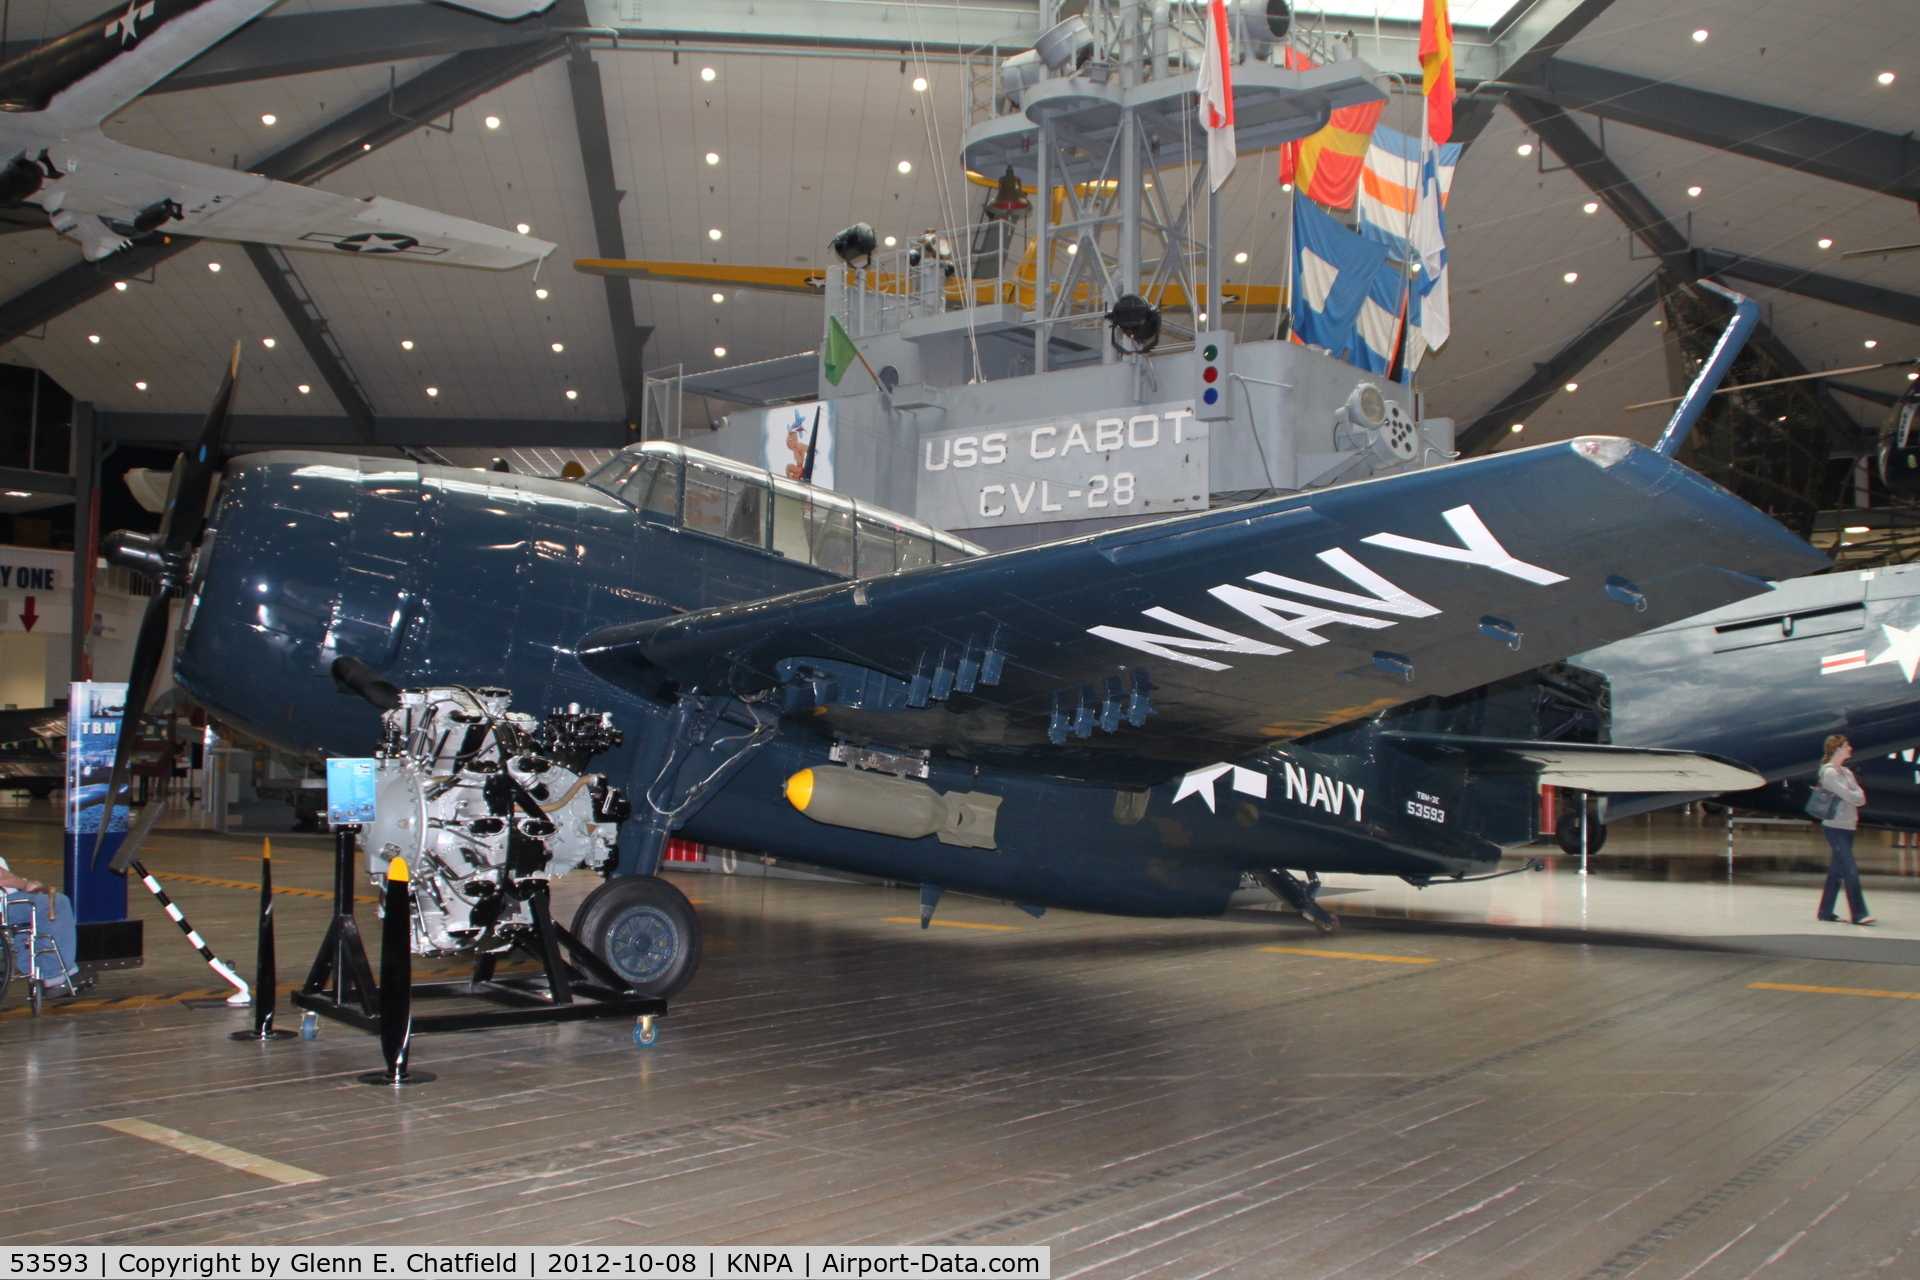 53593, Grumman TBM-3E Avenger C/N 3655, Naval Aviation Museum